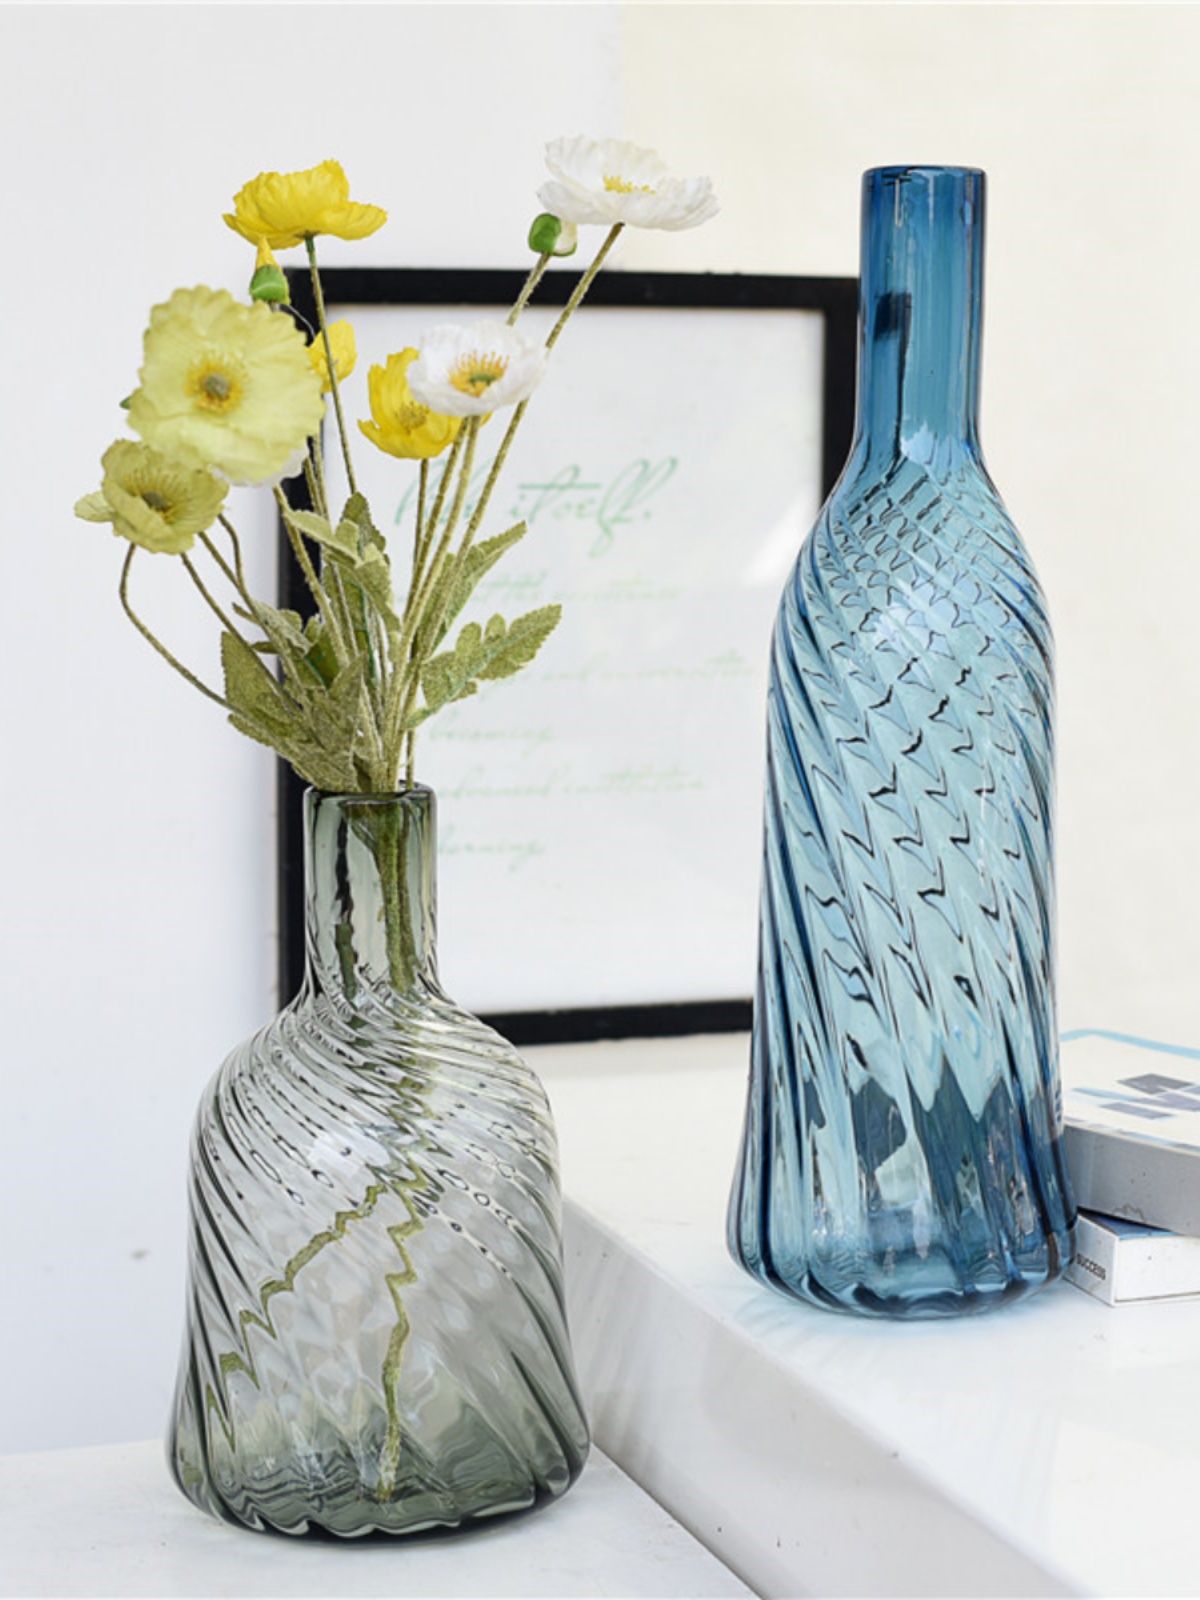 每周一三五上新/简约现代时尚彩色玻璃花瓶家居装饰品摆件B11-1-5